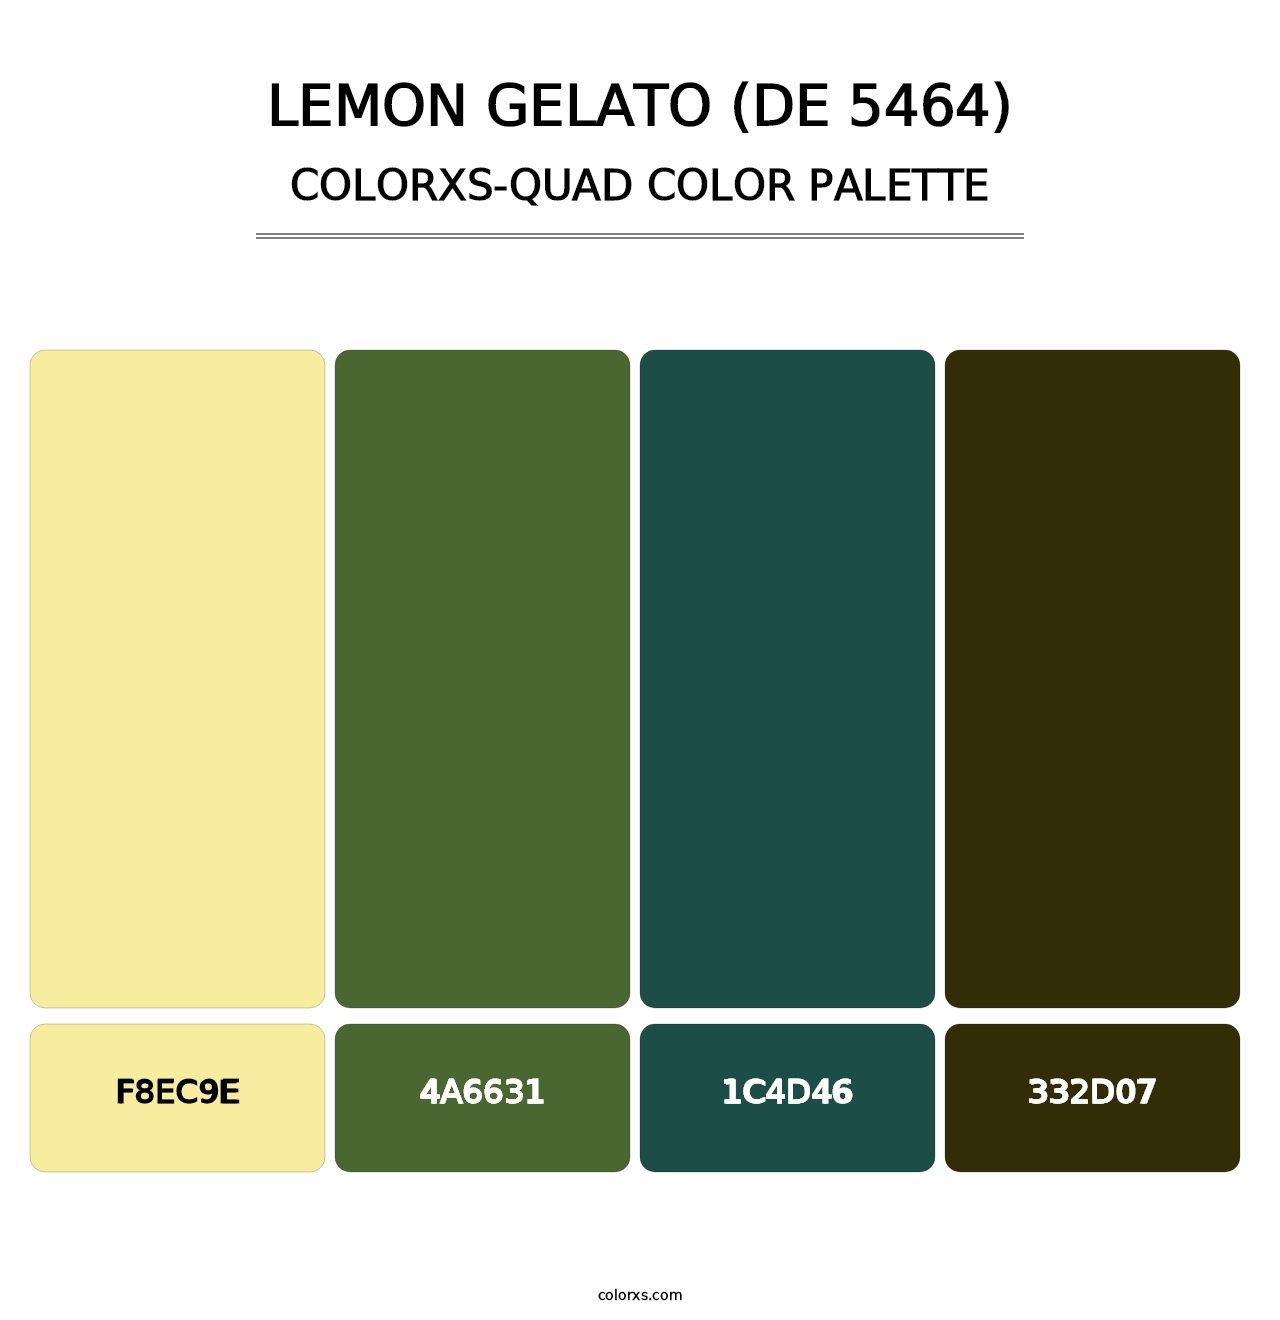 Lemon Gelato (DE 5464) - Colorxs Quad Palette